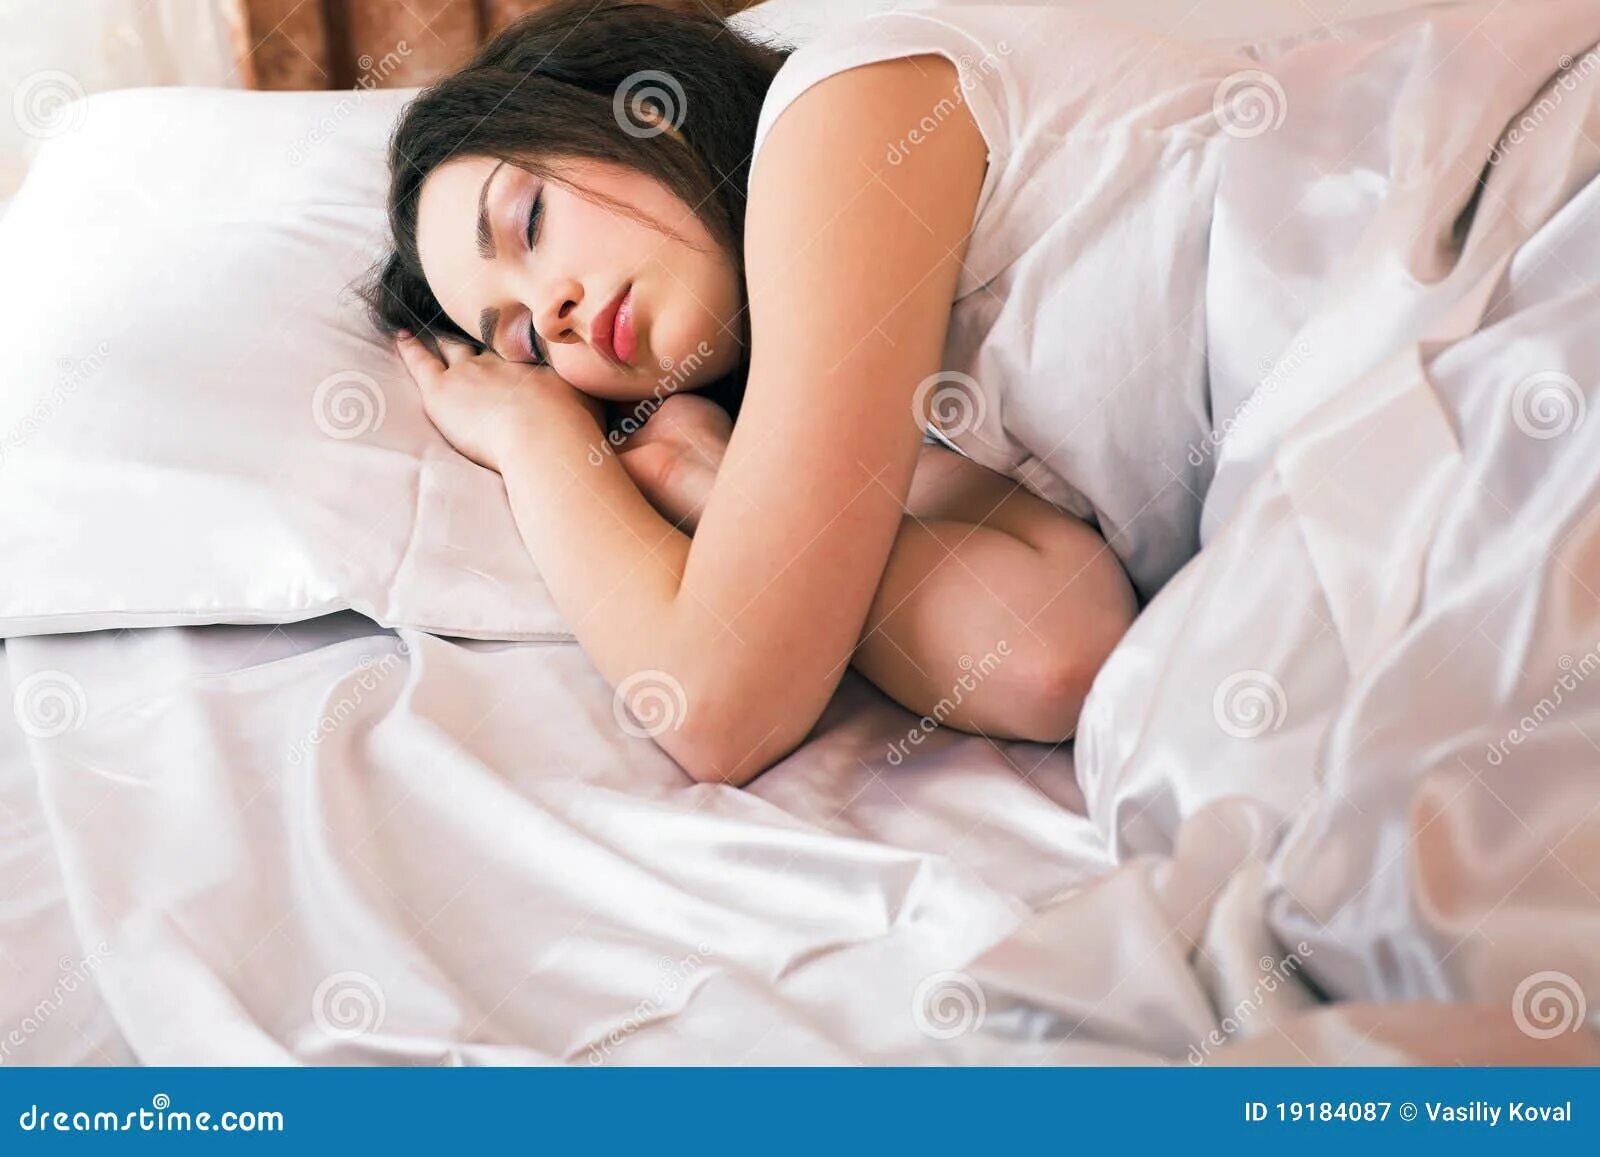 Японские спящие девушка. Спящие девушки любительские. Полные женщины в постели.